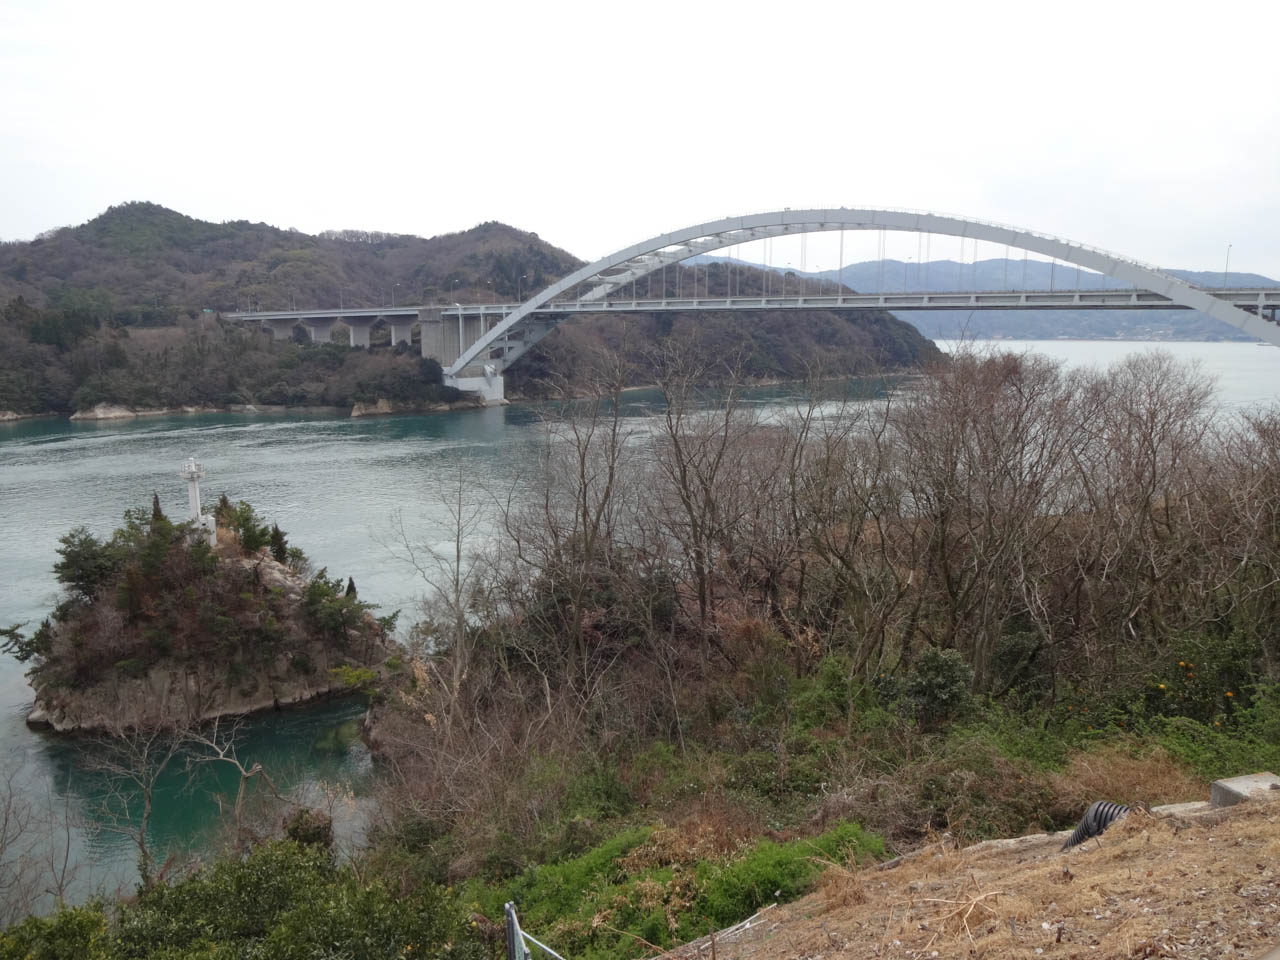 大三島橋